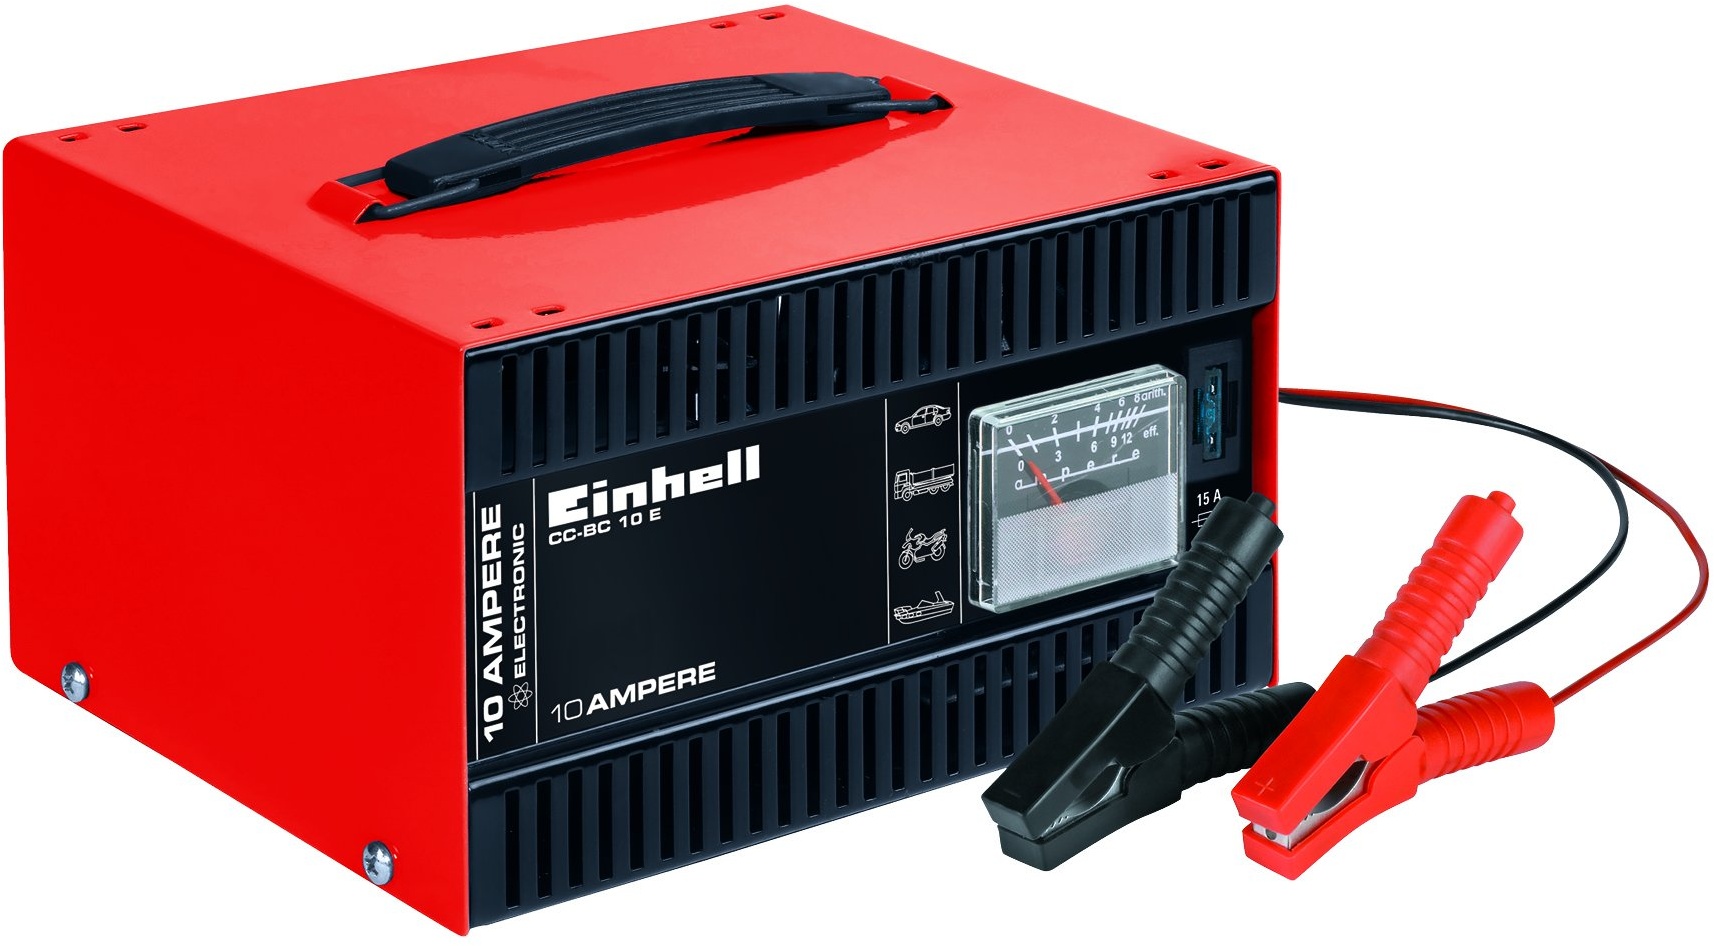 Einhell Batterie-Ladegerät CC-BC 10 E (12 V, f. Batterien von 5-200 Ah, Ladeelektronik, Stahlblechgehäuse, inkl. Ladeleitung m. Polzangen)